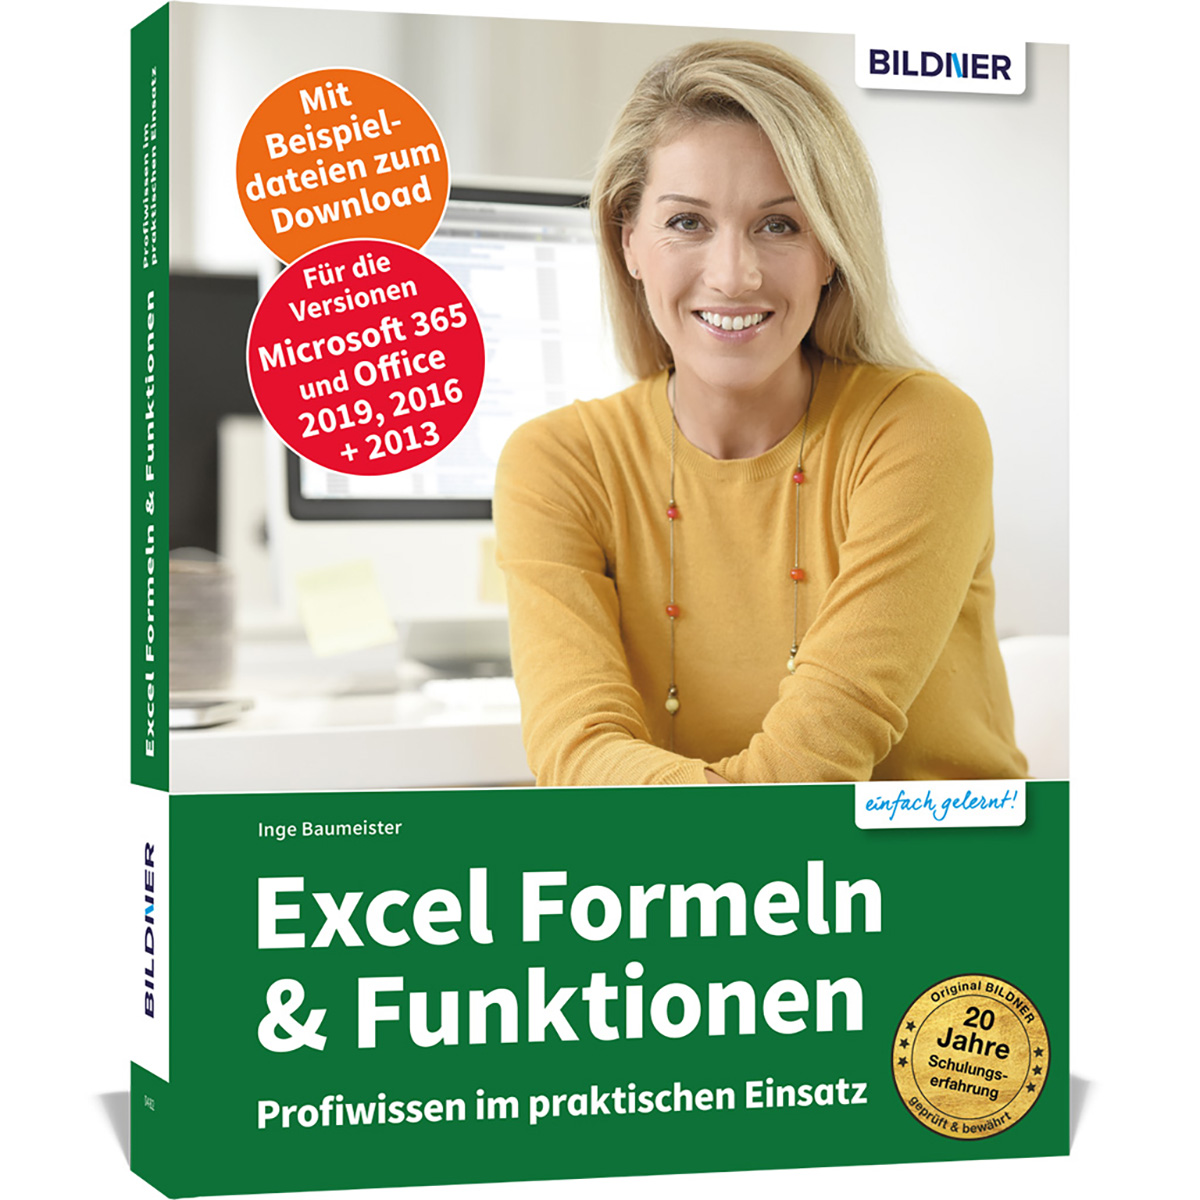 Excel Formeln & Funktionen: Profiwissen praktischen im Einsatz